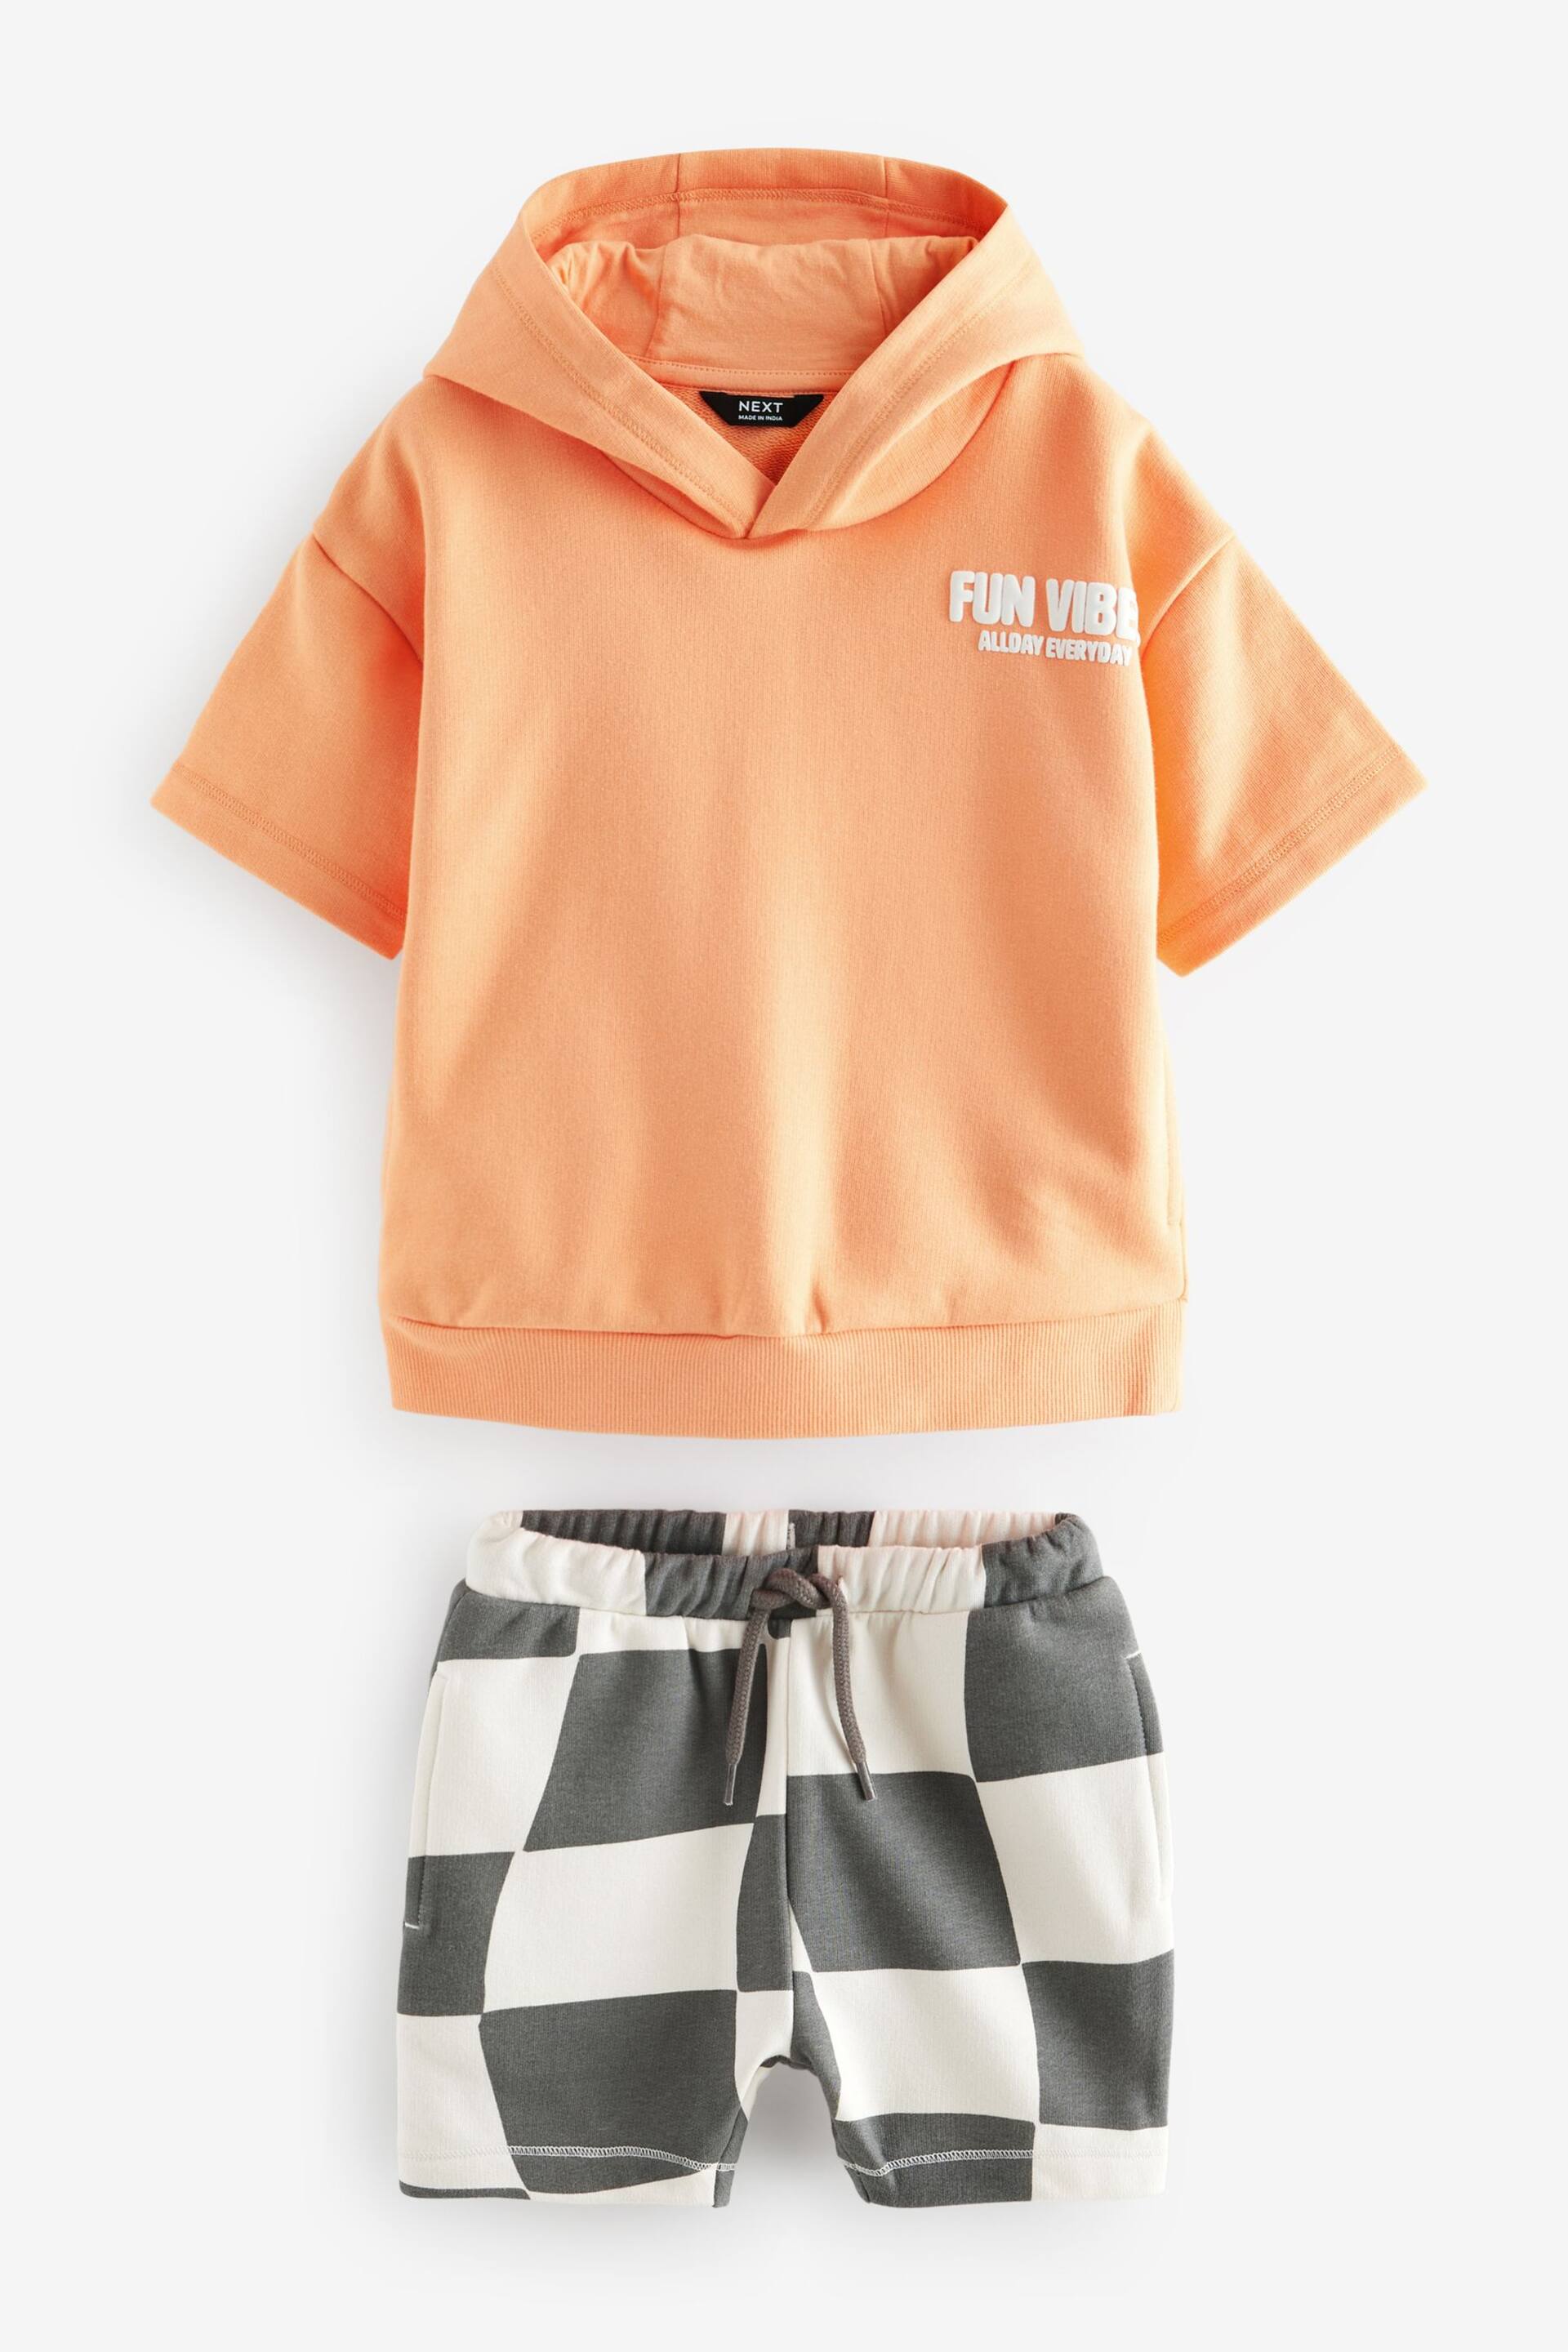 Orange Short Sleeve Hooded Sweatshirt and Shorts Set (3mths-7yrs) - Image 3 of 5